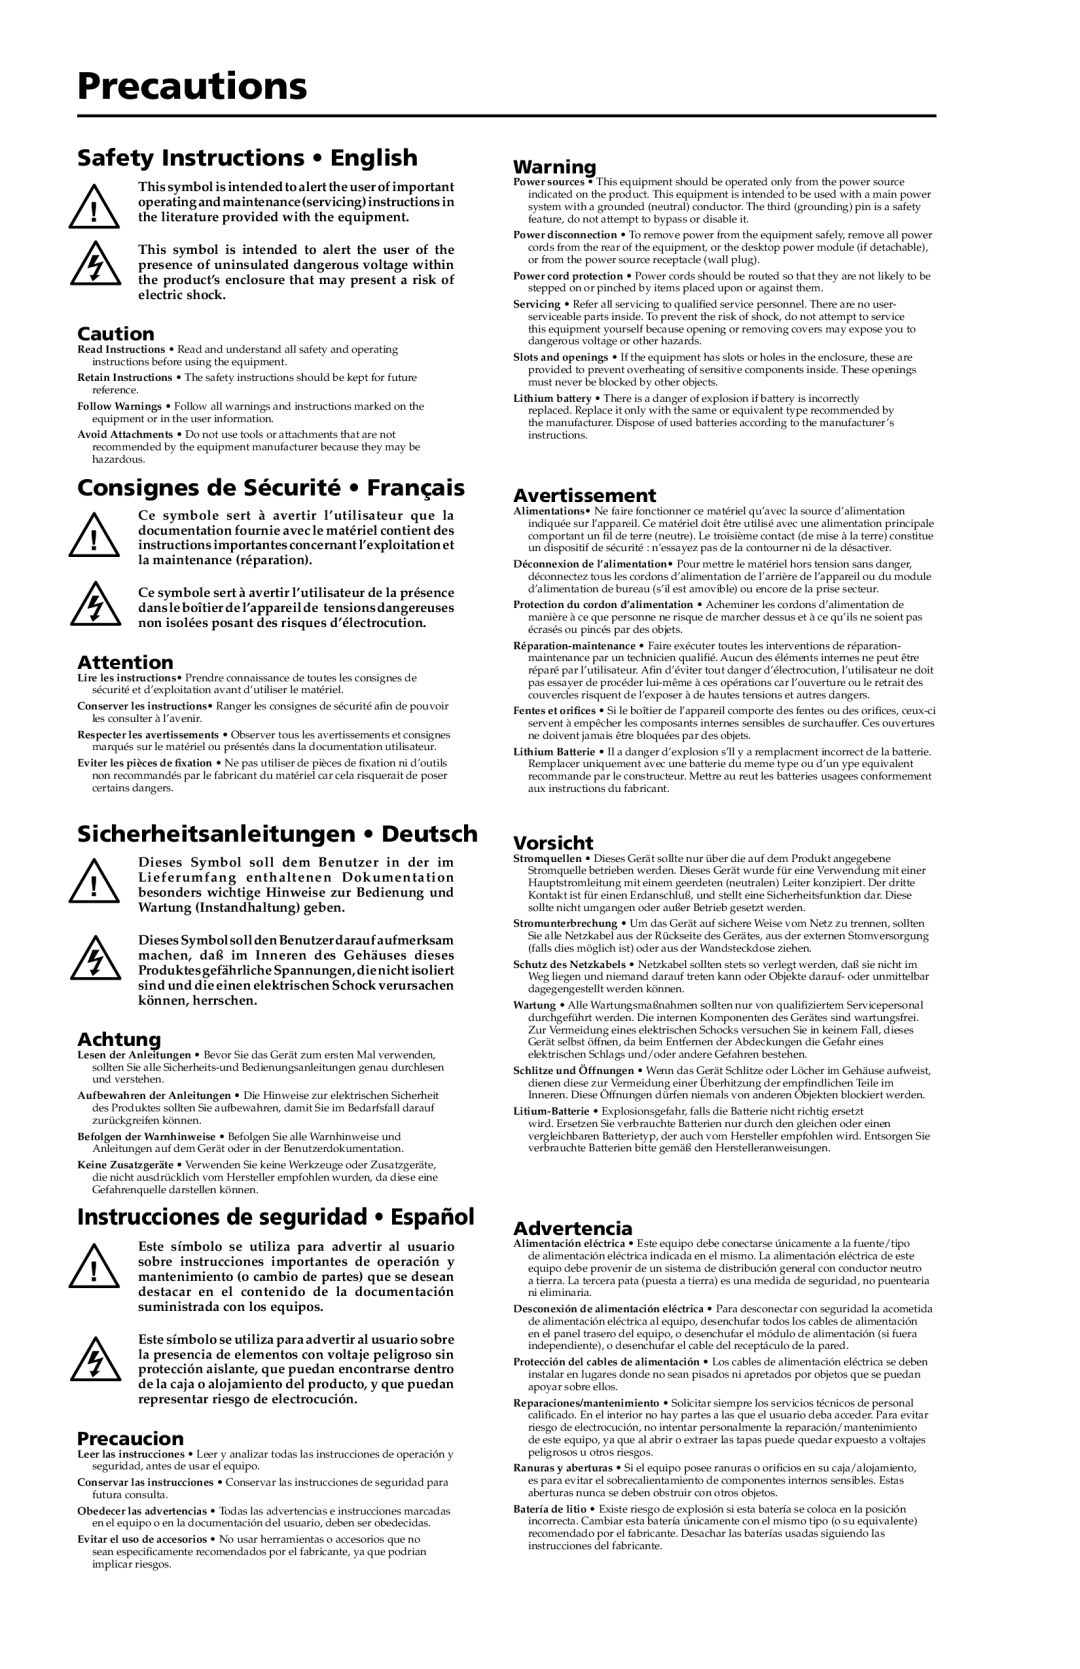 Extron electronic PS 124 Precautions, Safety Instructions English, Consignes de Sécurité Français, Avertissement, Achtung 